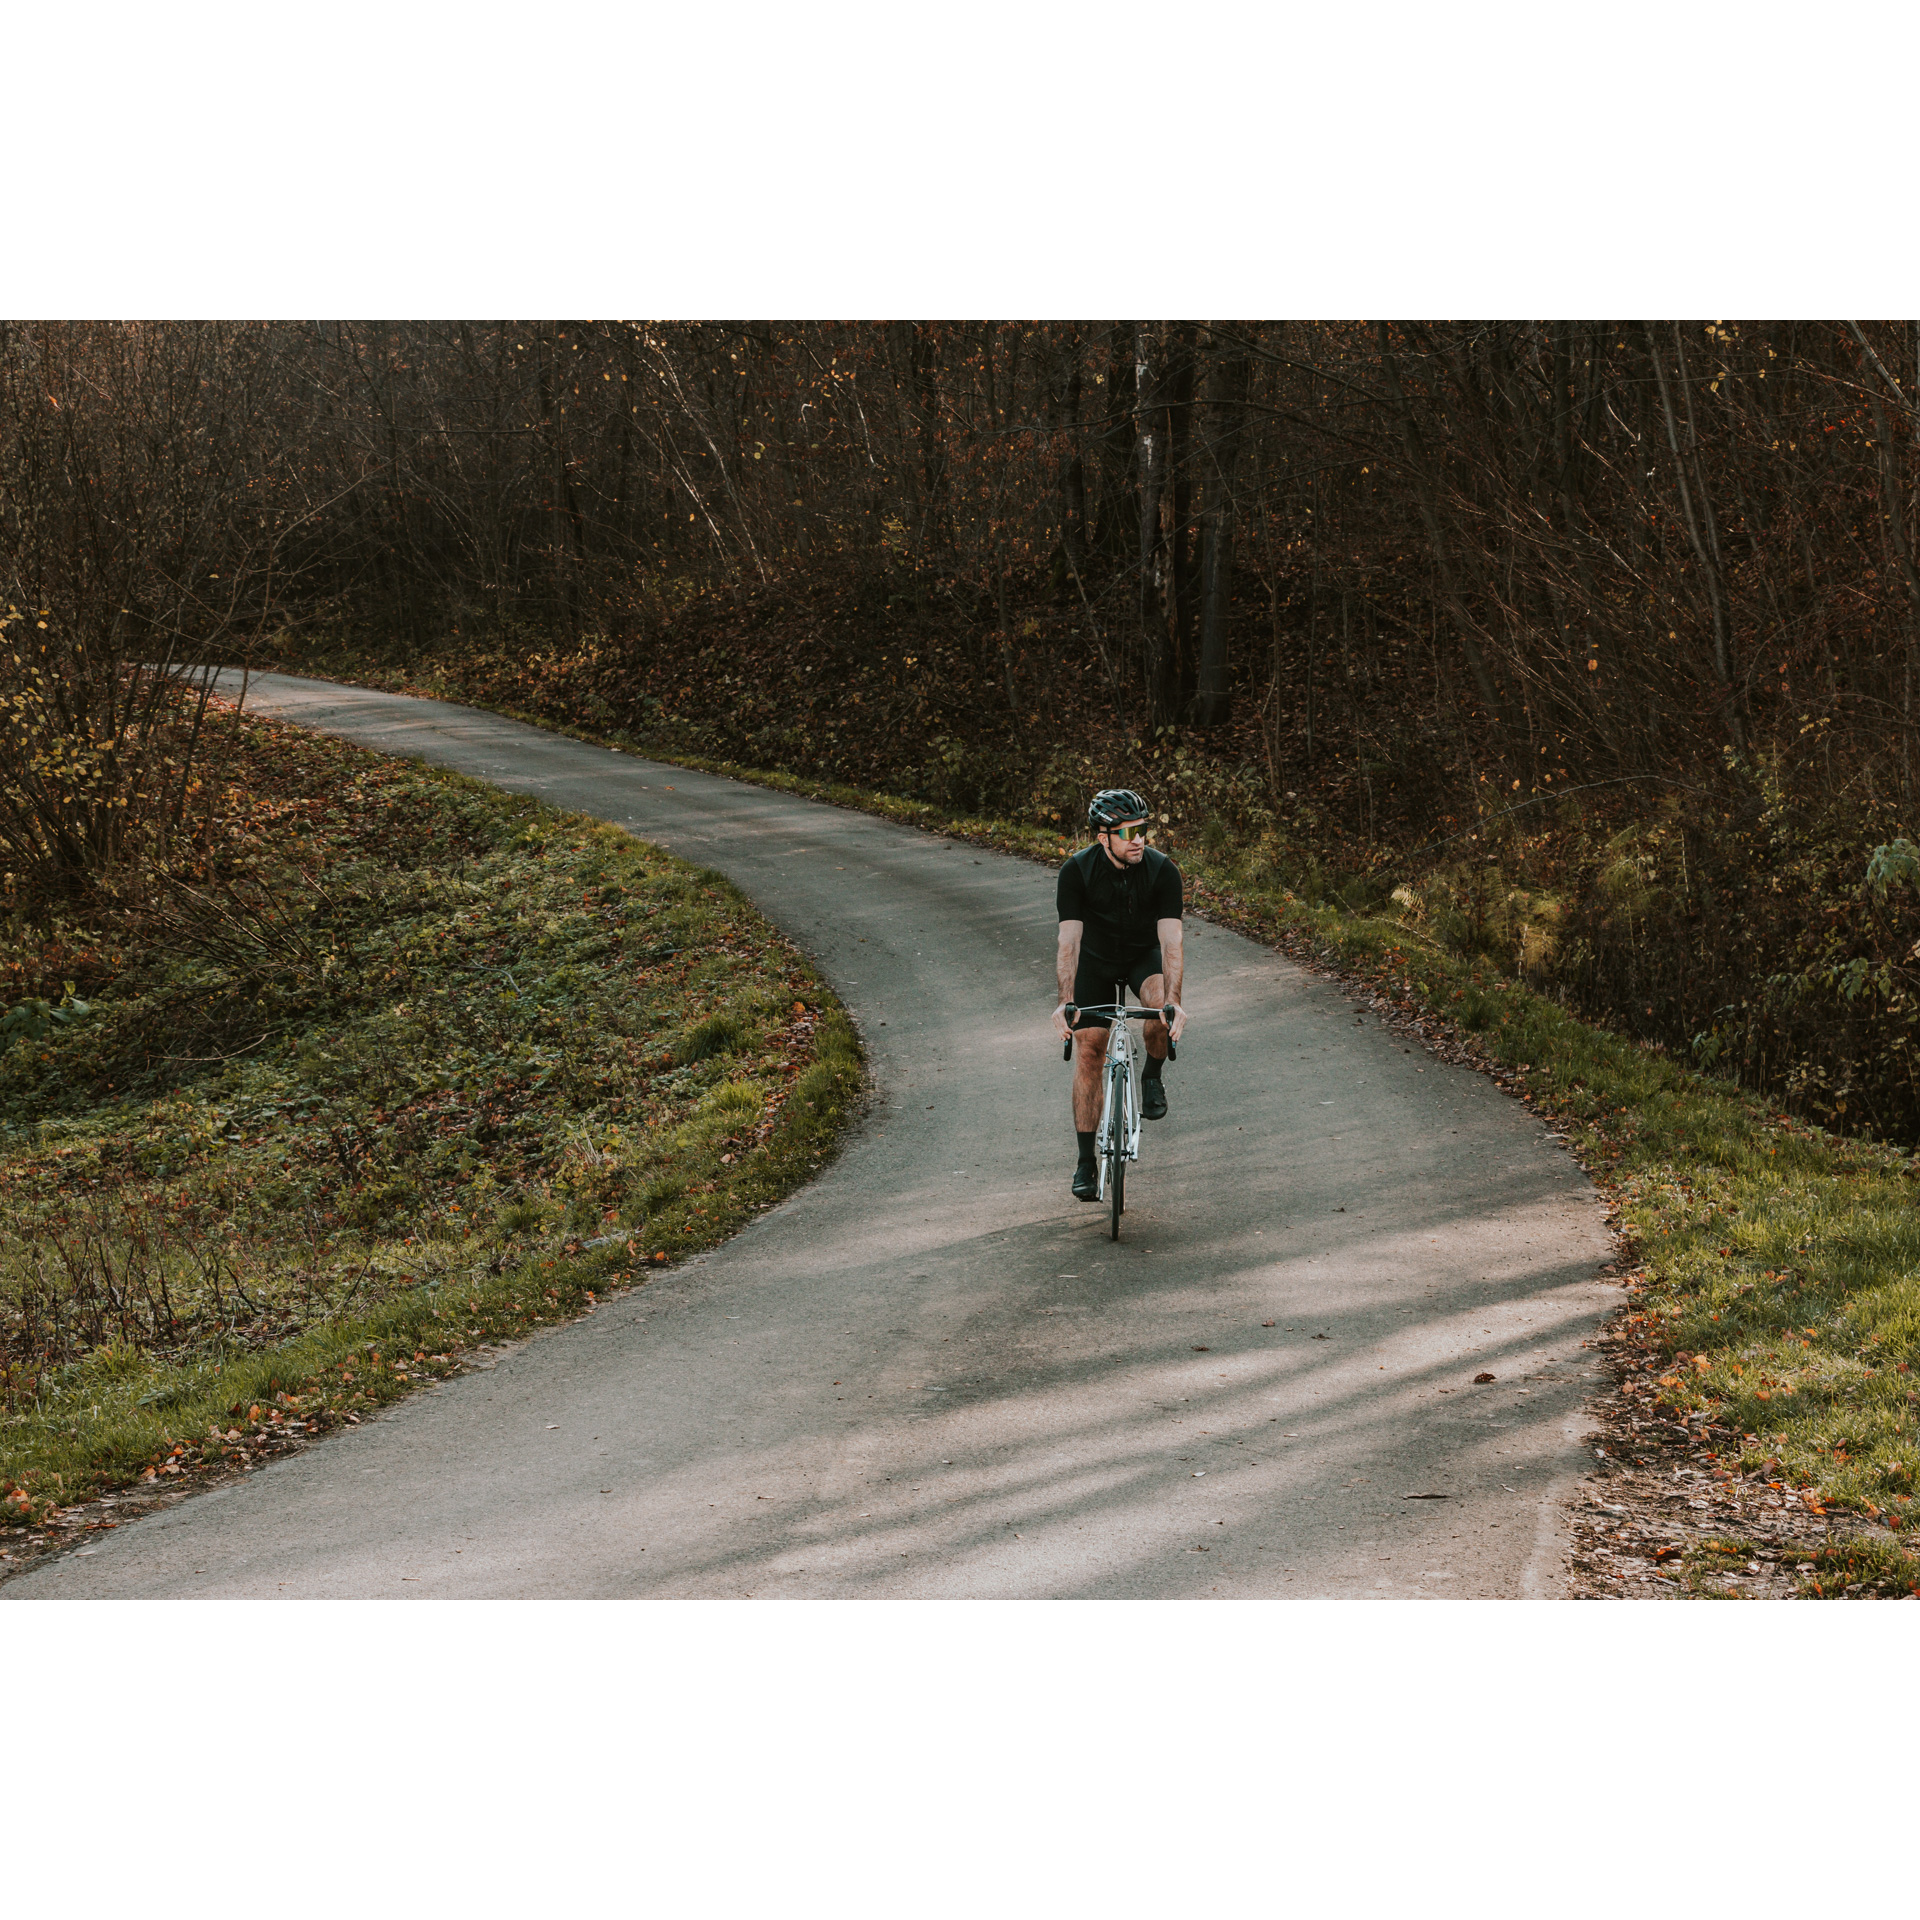 Kolarz w czarnym stroju, kasku i ciemnych okularach, jadący na rowerze asfaltową drogą biegnącą wśród drzew